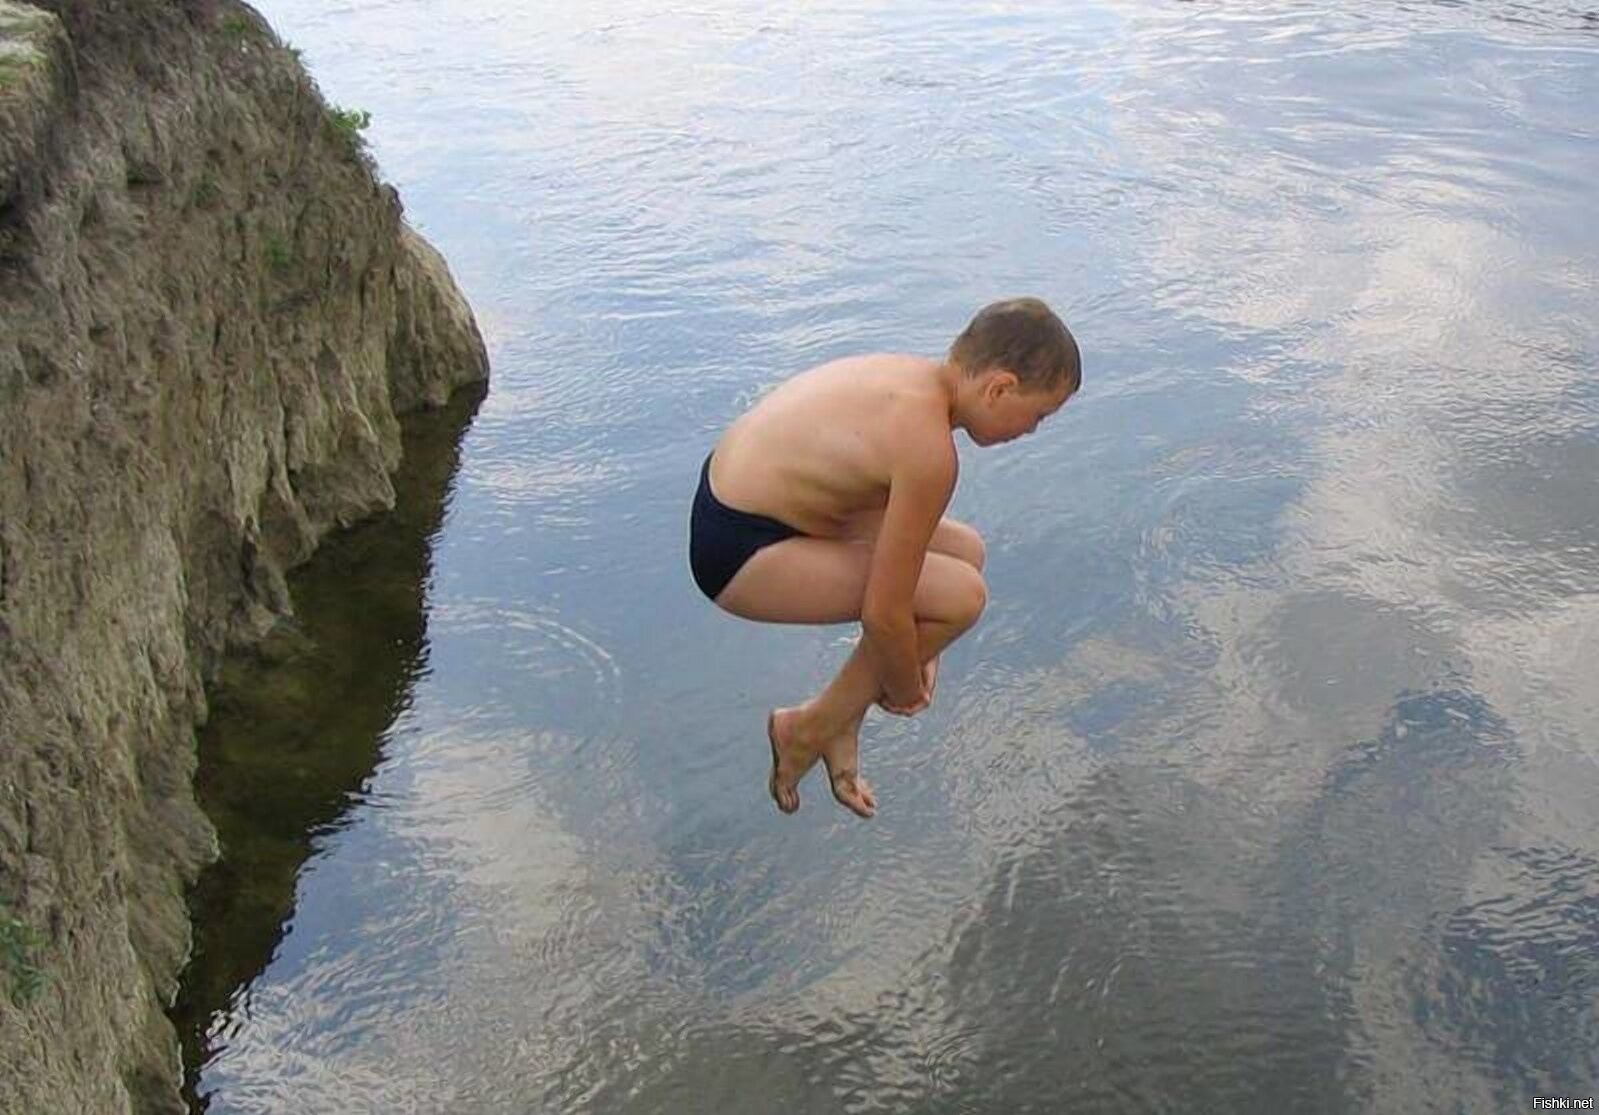 В воде ныряет в реку. Мальчик ныряет в воду. Парень нырнул. Маечик купаеча в речке. Место опасное для купания.